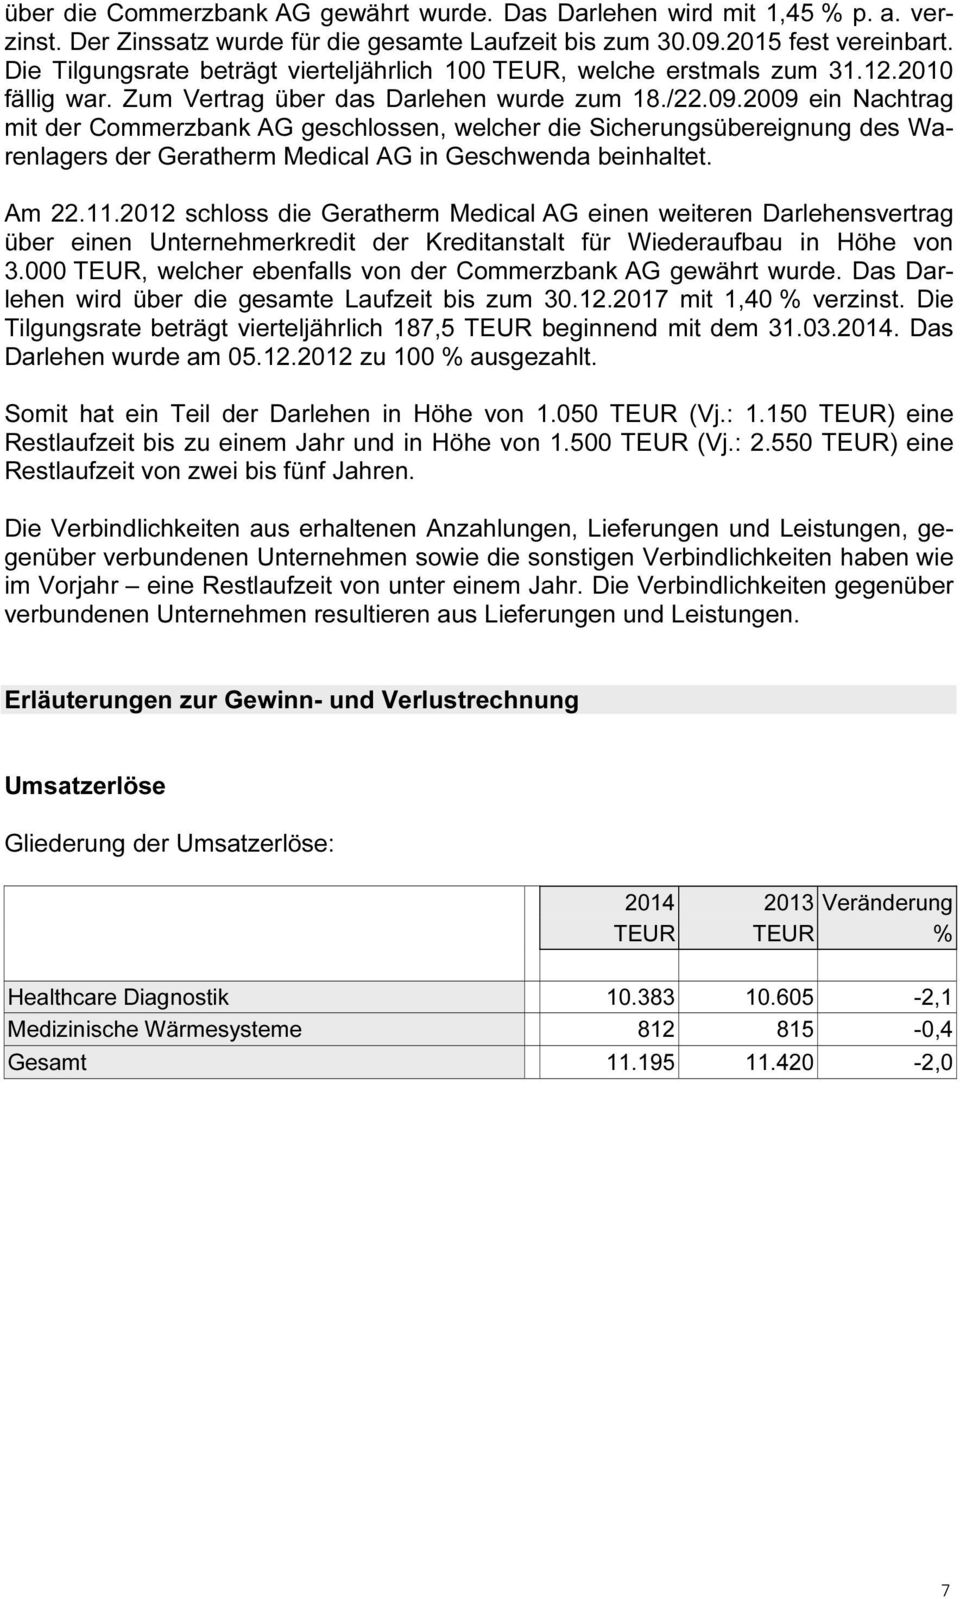 2009 ein Nachtrag mit der Commerzbank AG geschlossen, welcher die Sicherungsübereignung des Warenlagers der Geratherm Medical AG in Geschwenda beinhaltet. Am 22.11.